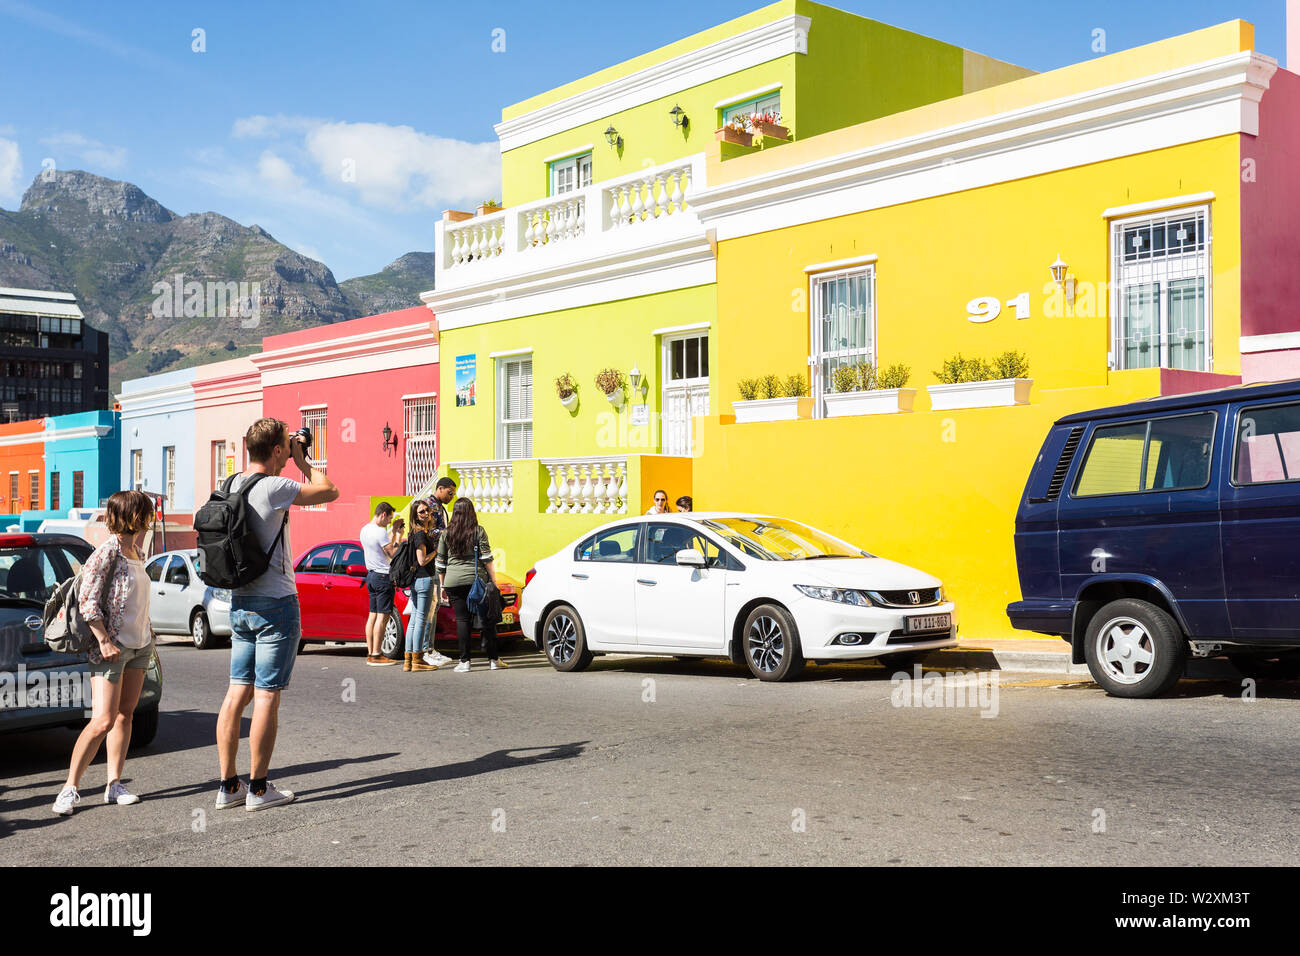 Männliche kaukasischen Tourist, der ein Foto von einer bunten Reihe von Häusern, während in einer Straße in Bo Kaap, Kapstadt, Südafrika während Sightseeing Stockfoto